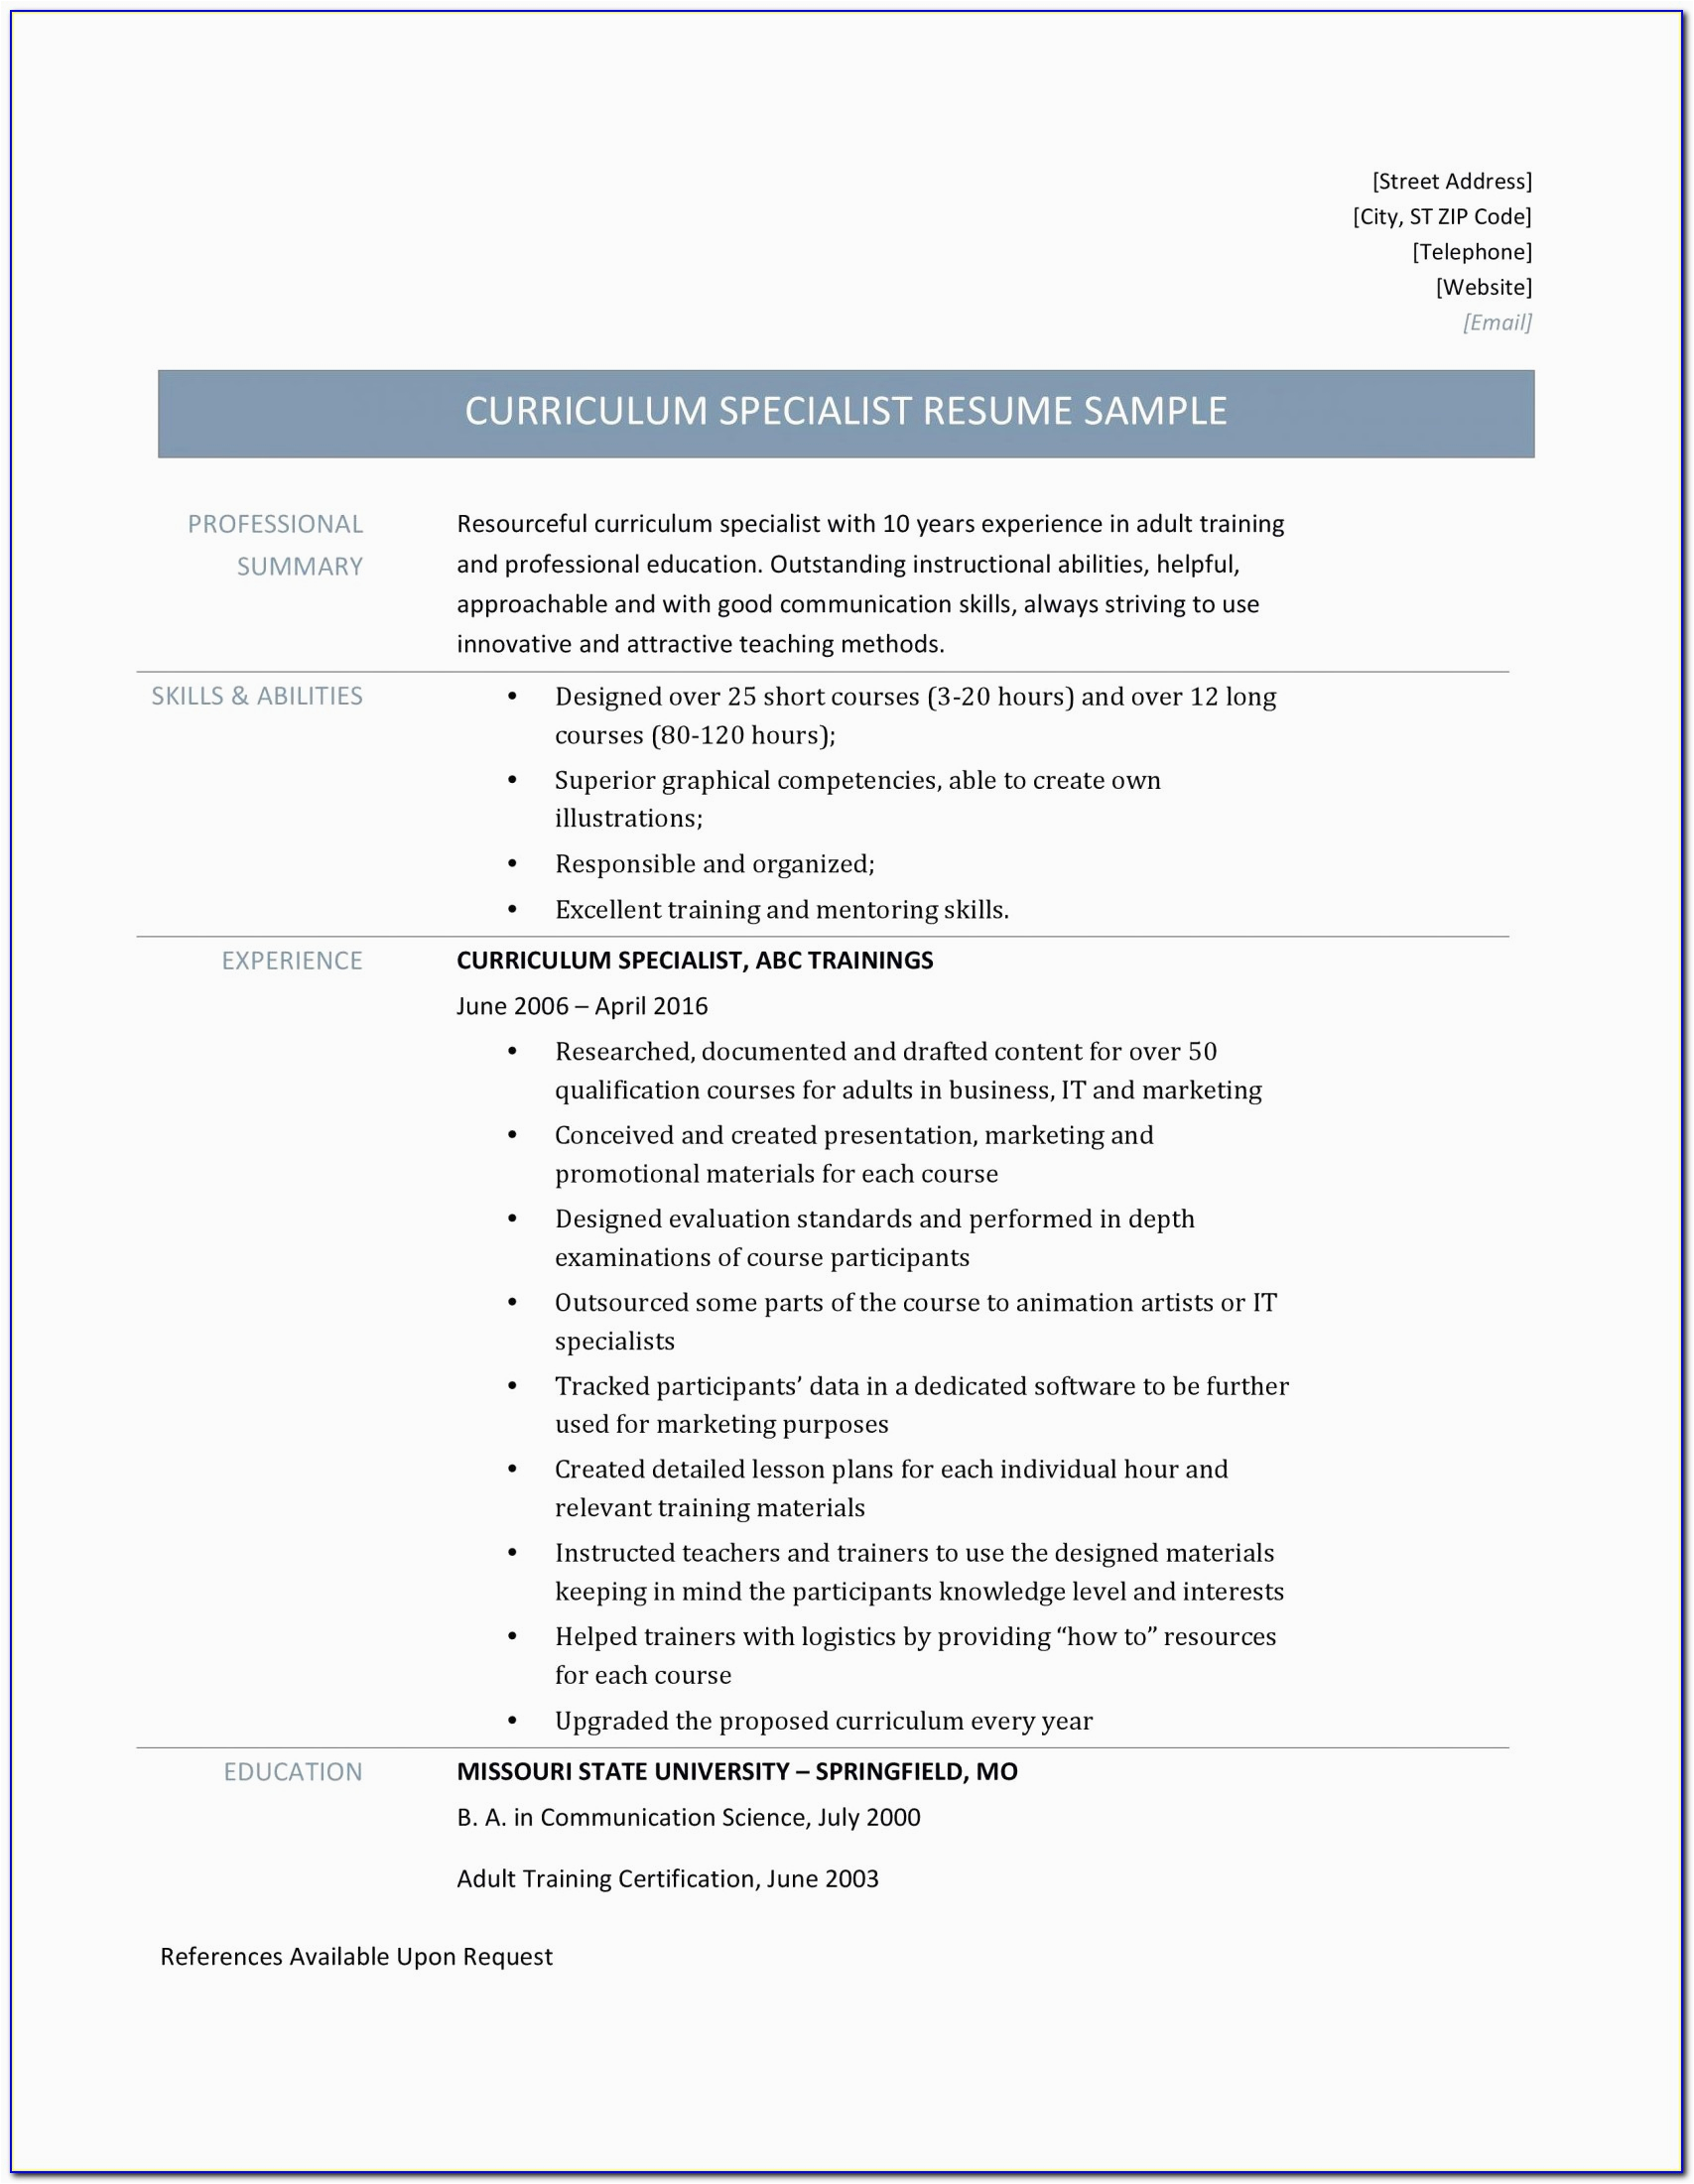 Sample Resume for Medical Transcriptionist with No Experience Resume for Medical Transcriptionist Unique Resume Medical